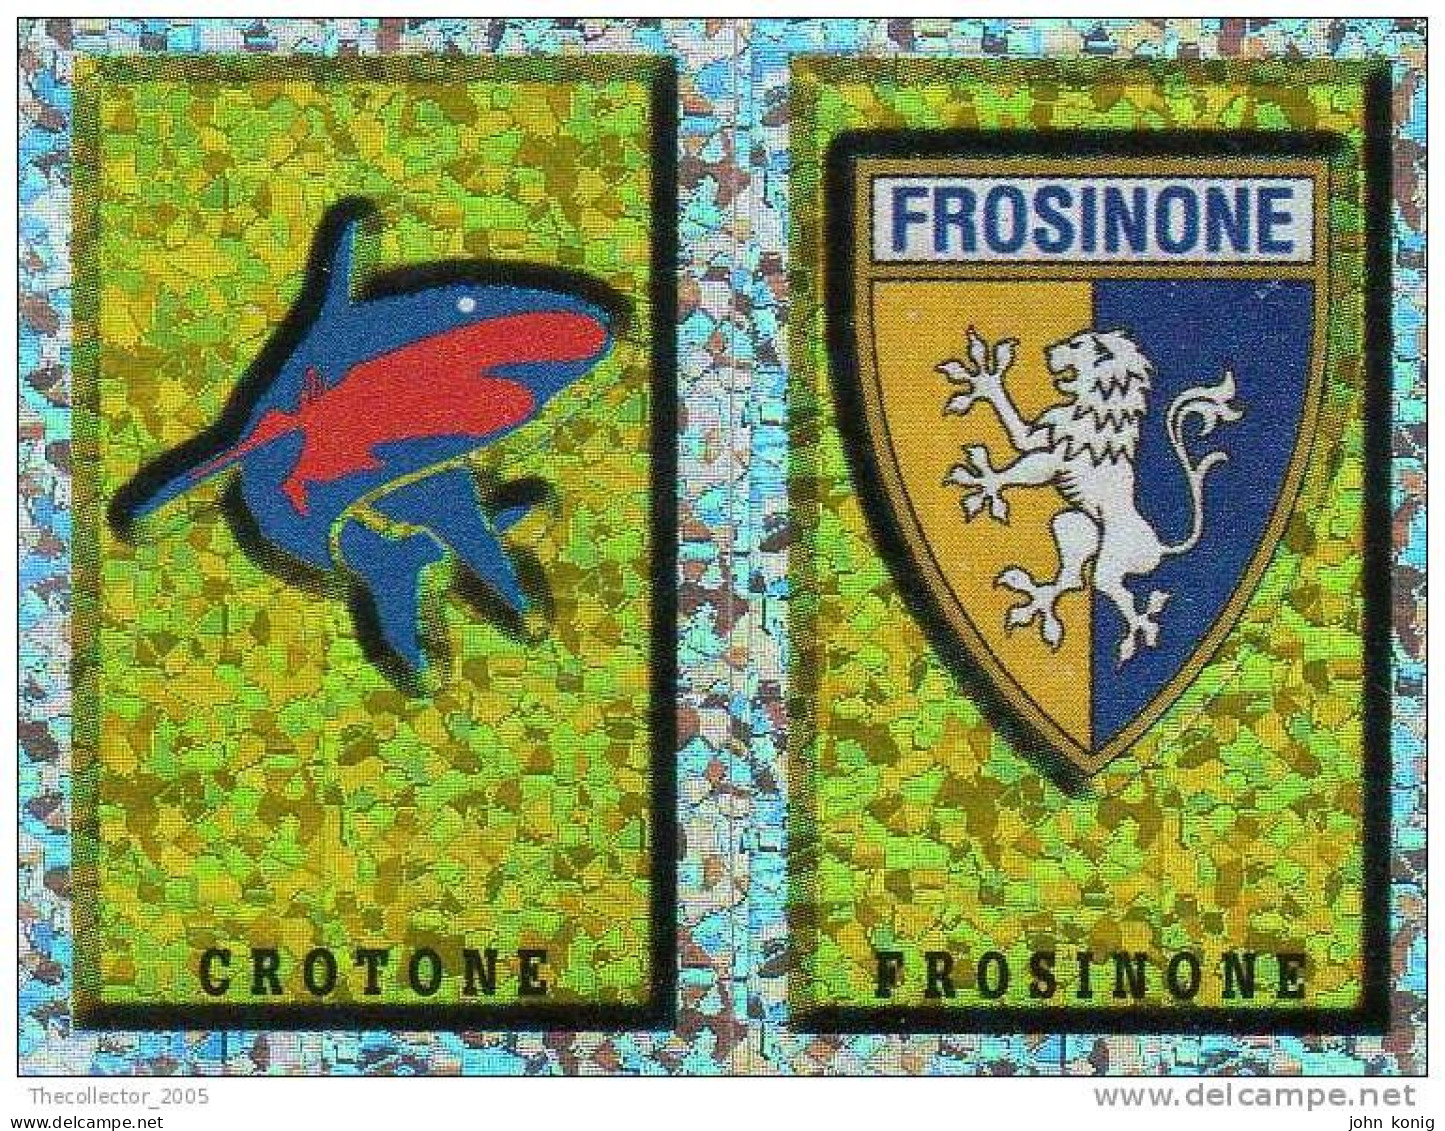 CALCIATORI - Calcio - Figurine Panini-calciatori 1997-98- N. #676 SCUDETTO CROTONE-FROSINONE - Italian Edition